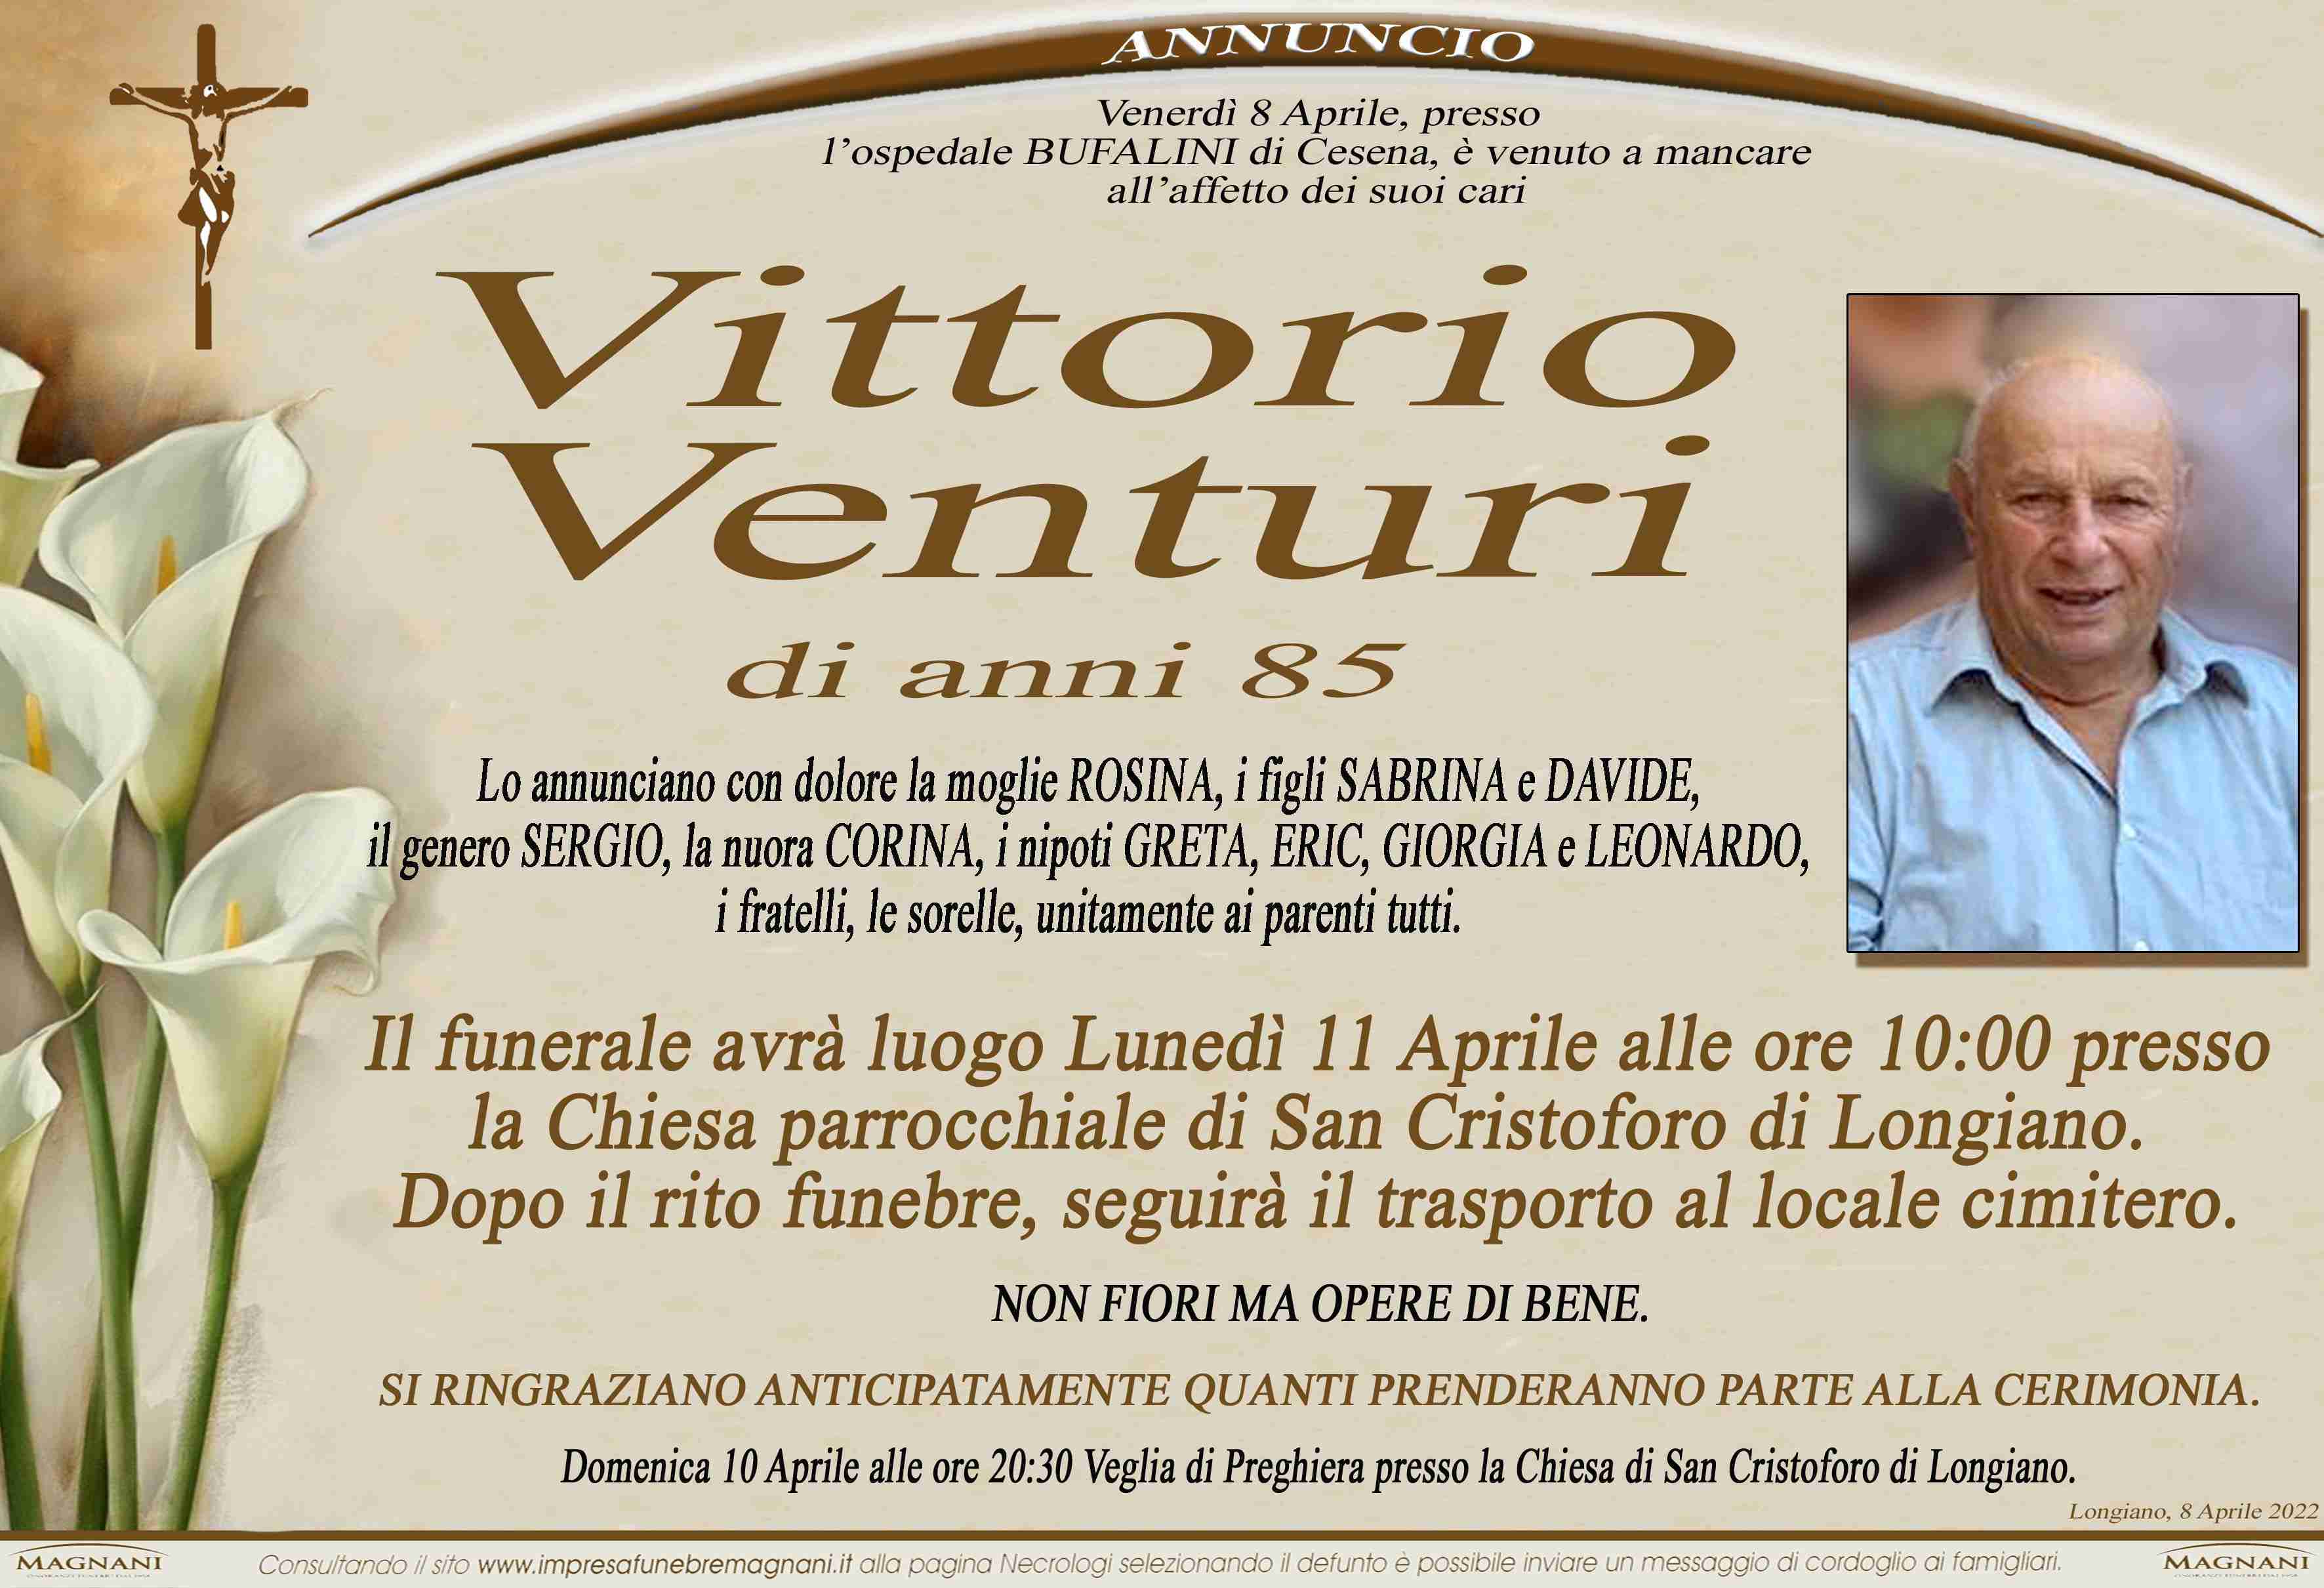 Vittorio Venturi